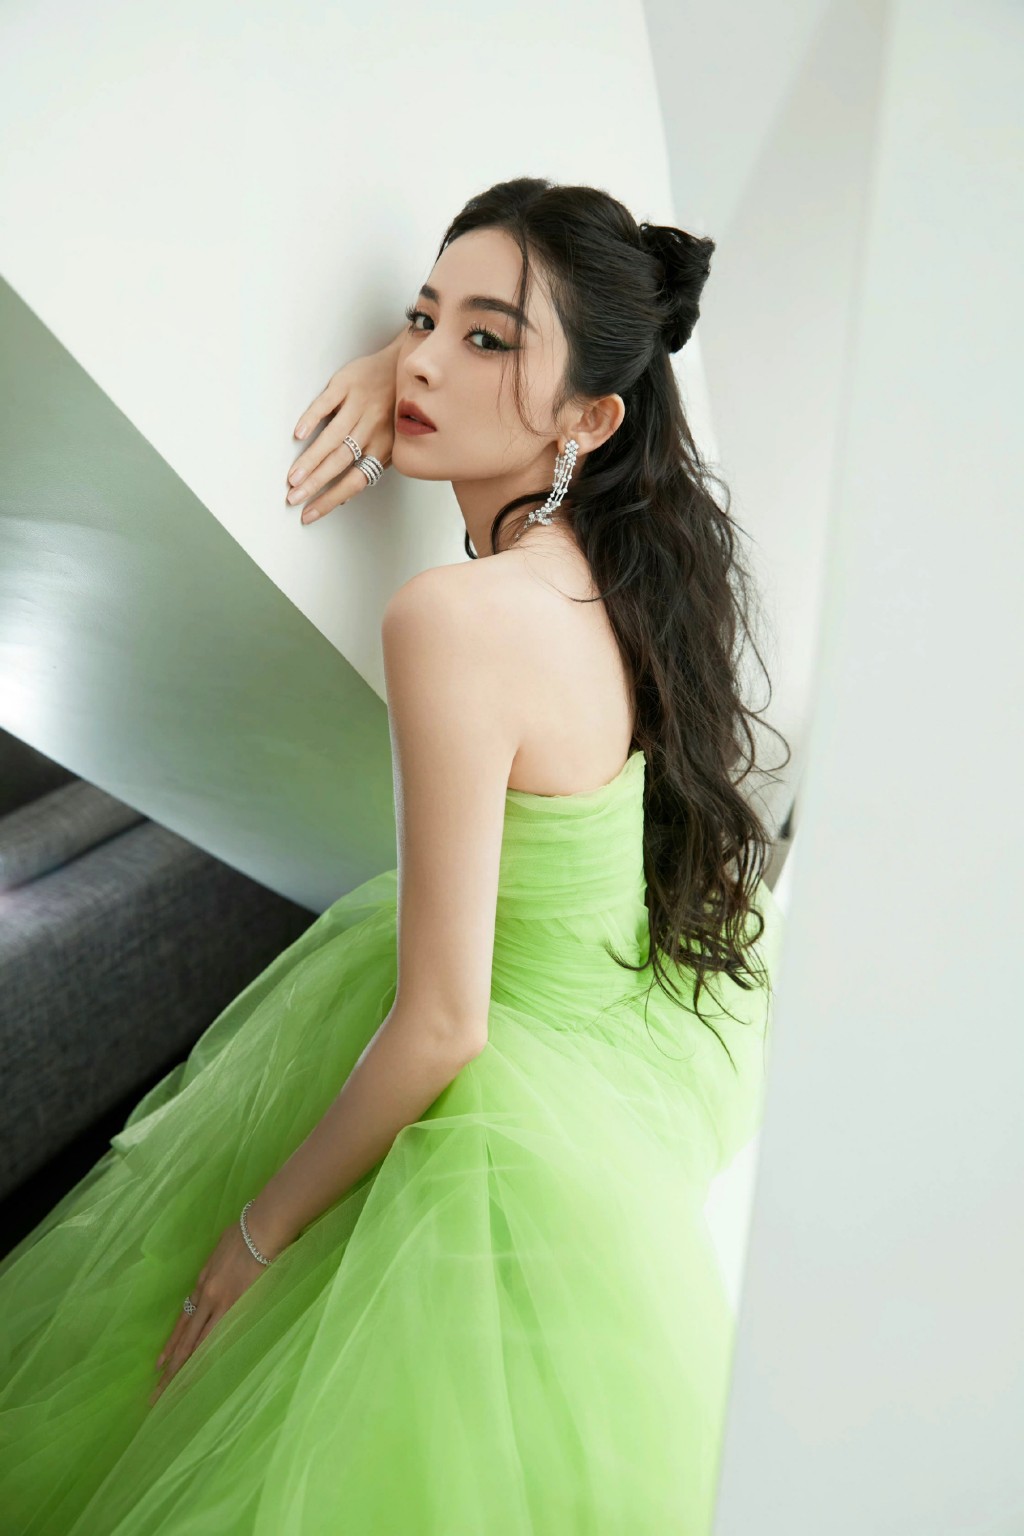 娜扎绿色纱裙优雅漂亮妩媚写真图片